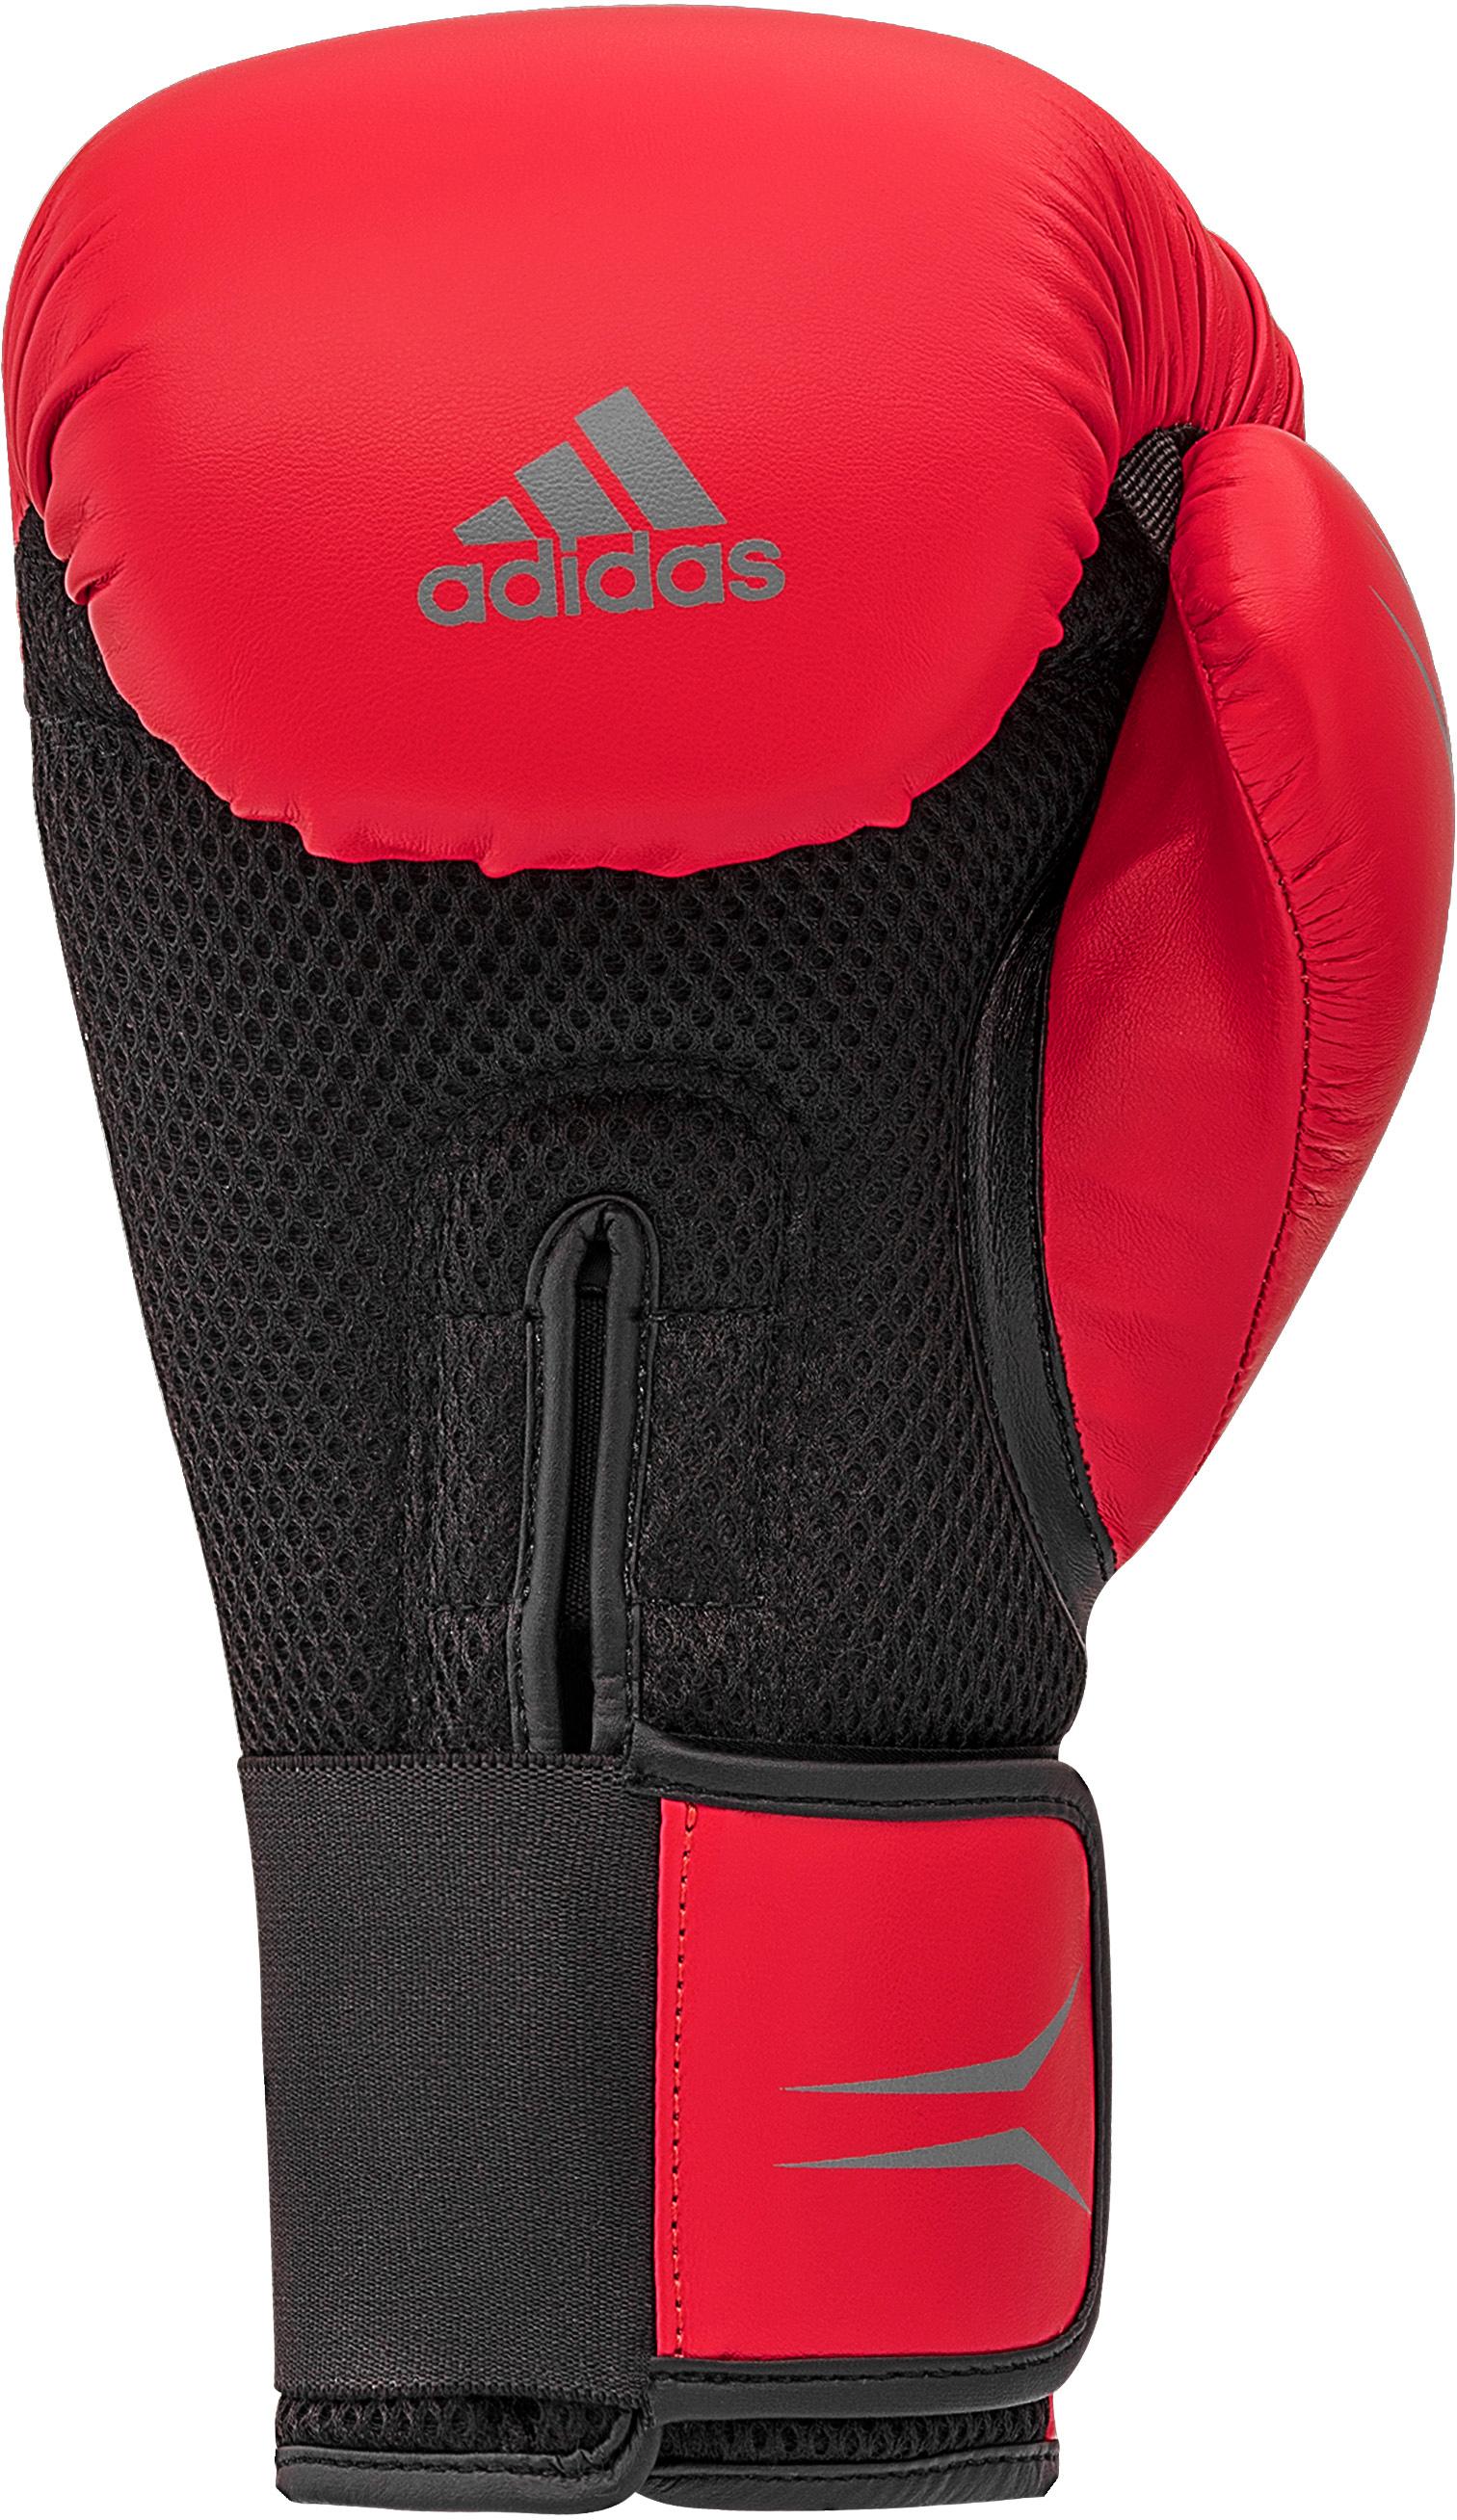 Adidas Speed Tilt rot-schwarz Herren von Online 150 SportScheck im Boxhandschuhe Shop kaufen